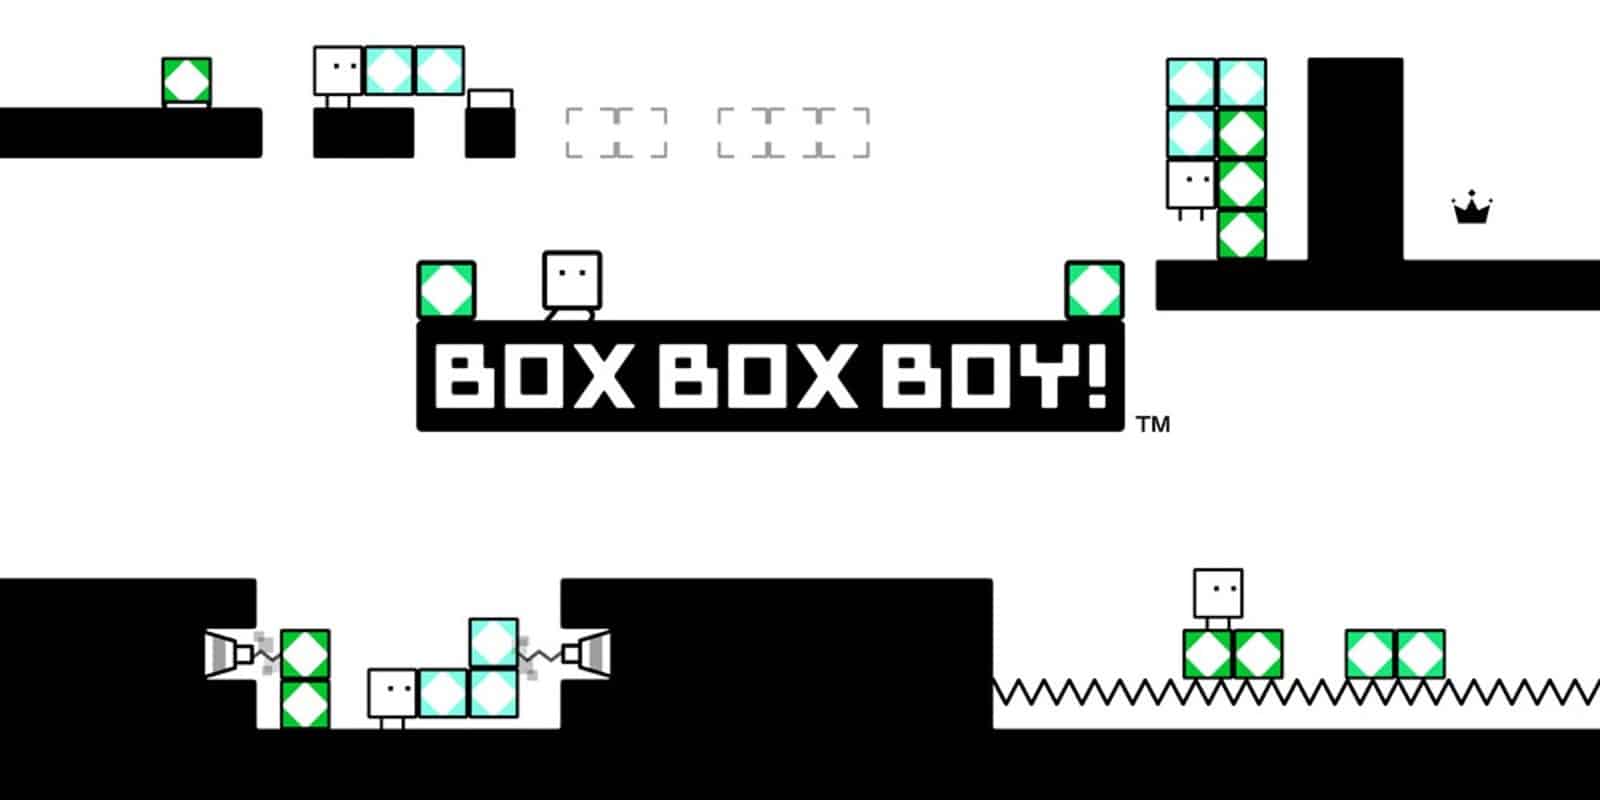 BoxBoxBoy! stats facts